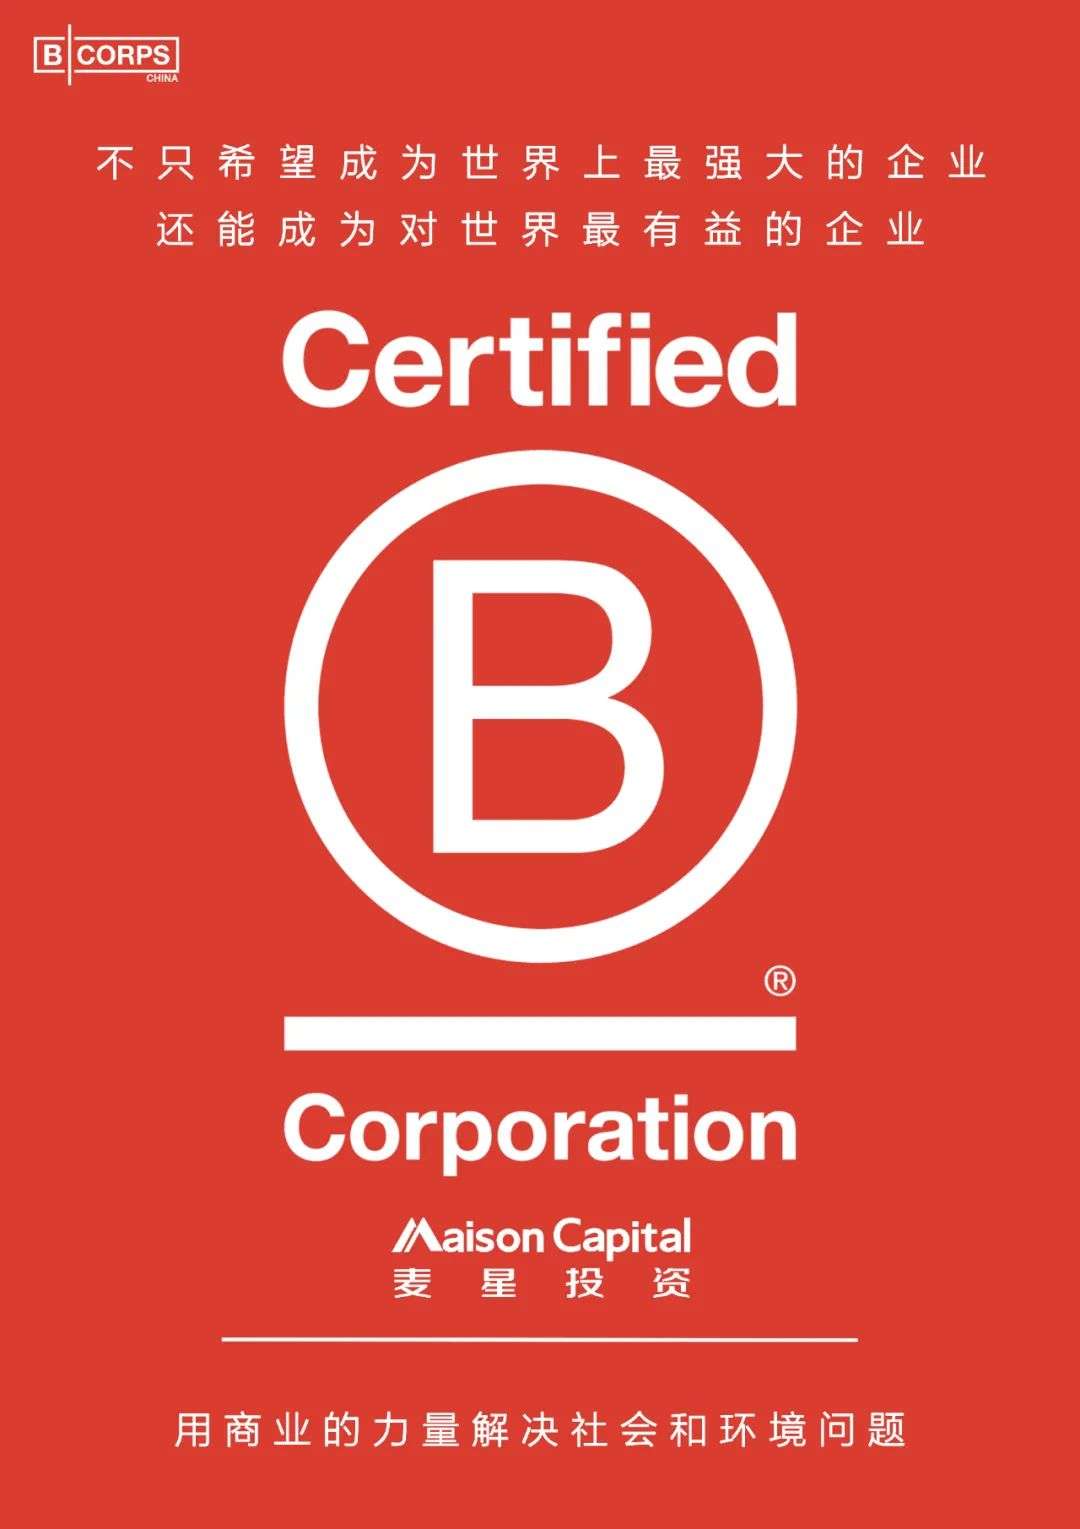 麦星投资成为中国私募股权投资行业第一家获B Corp认证的共益企业